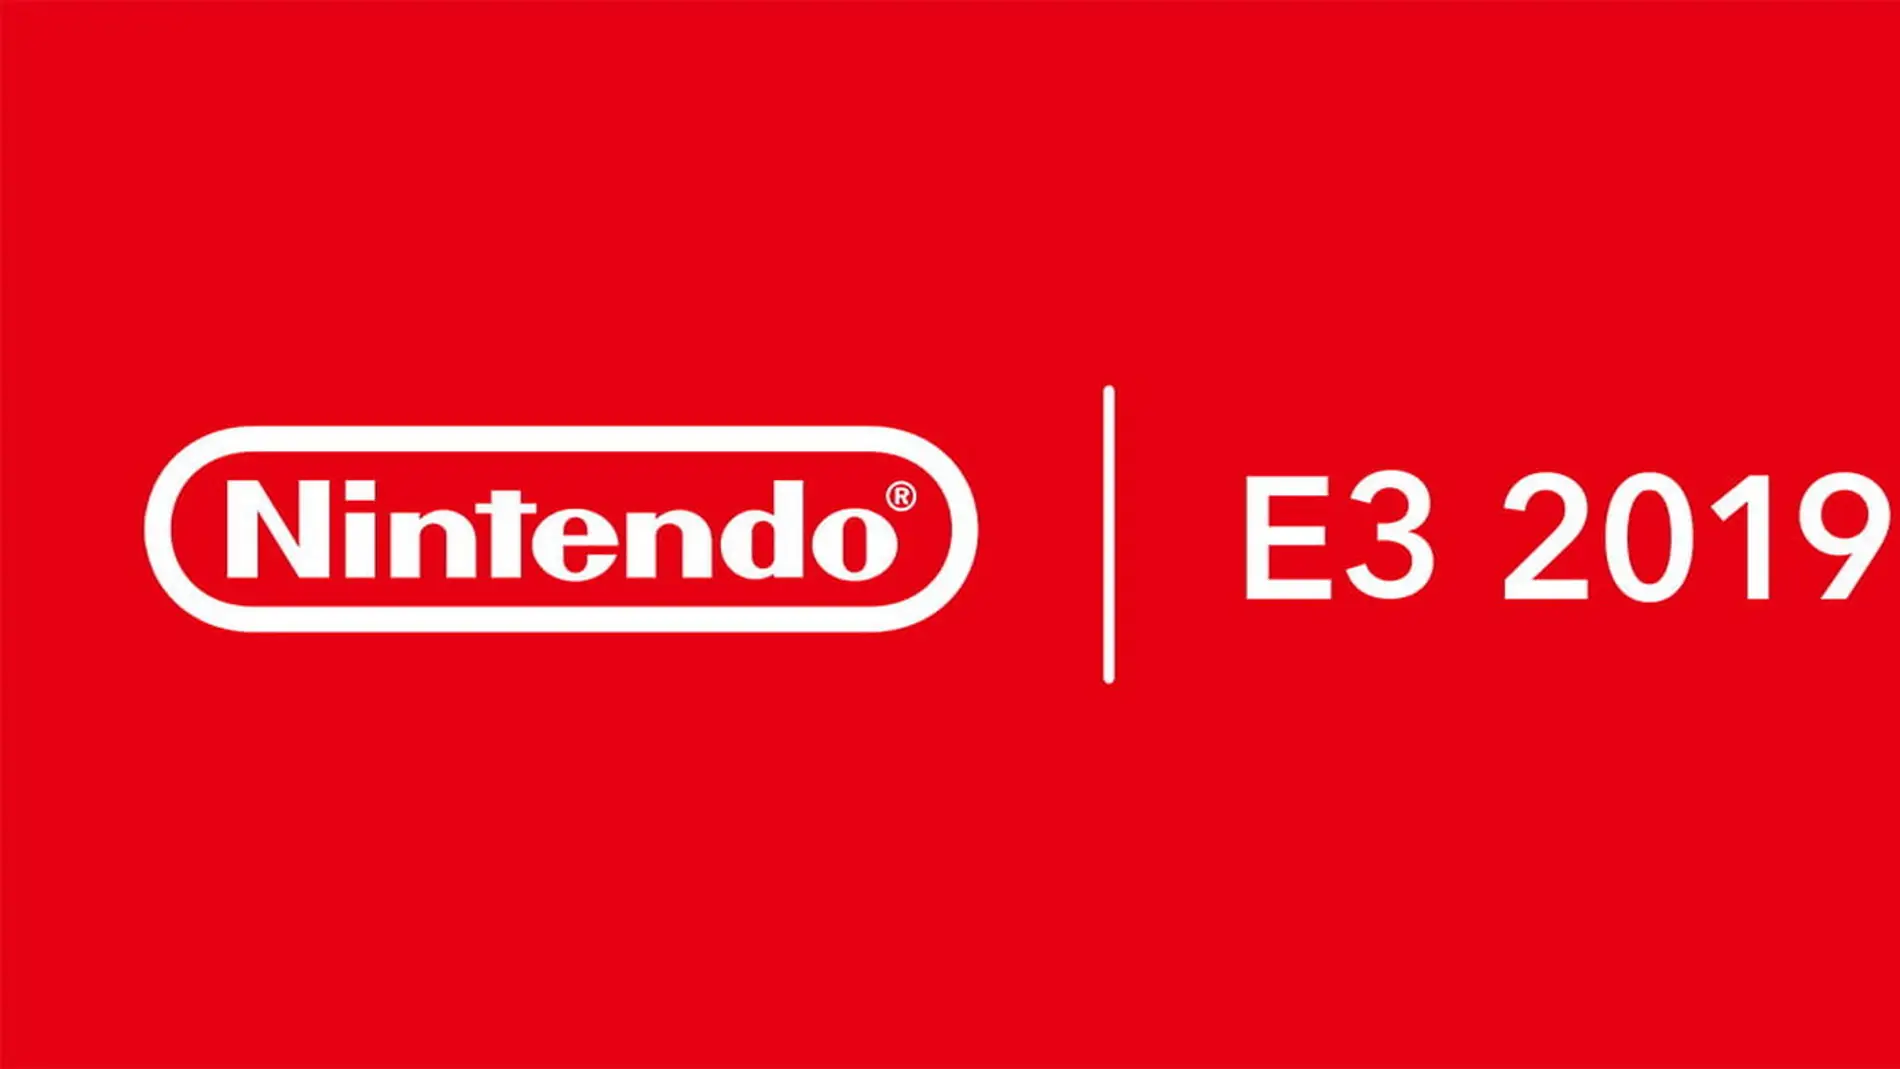 Nintendo E3 2019 